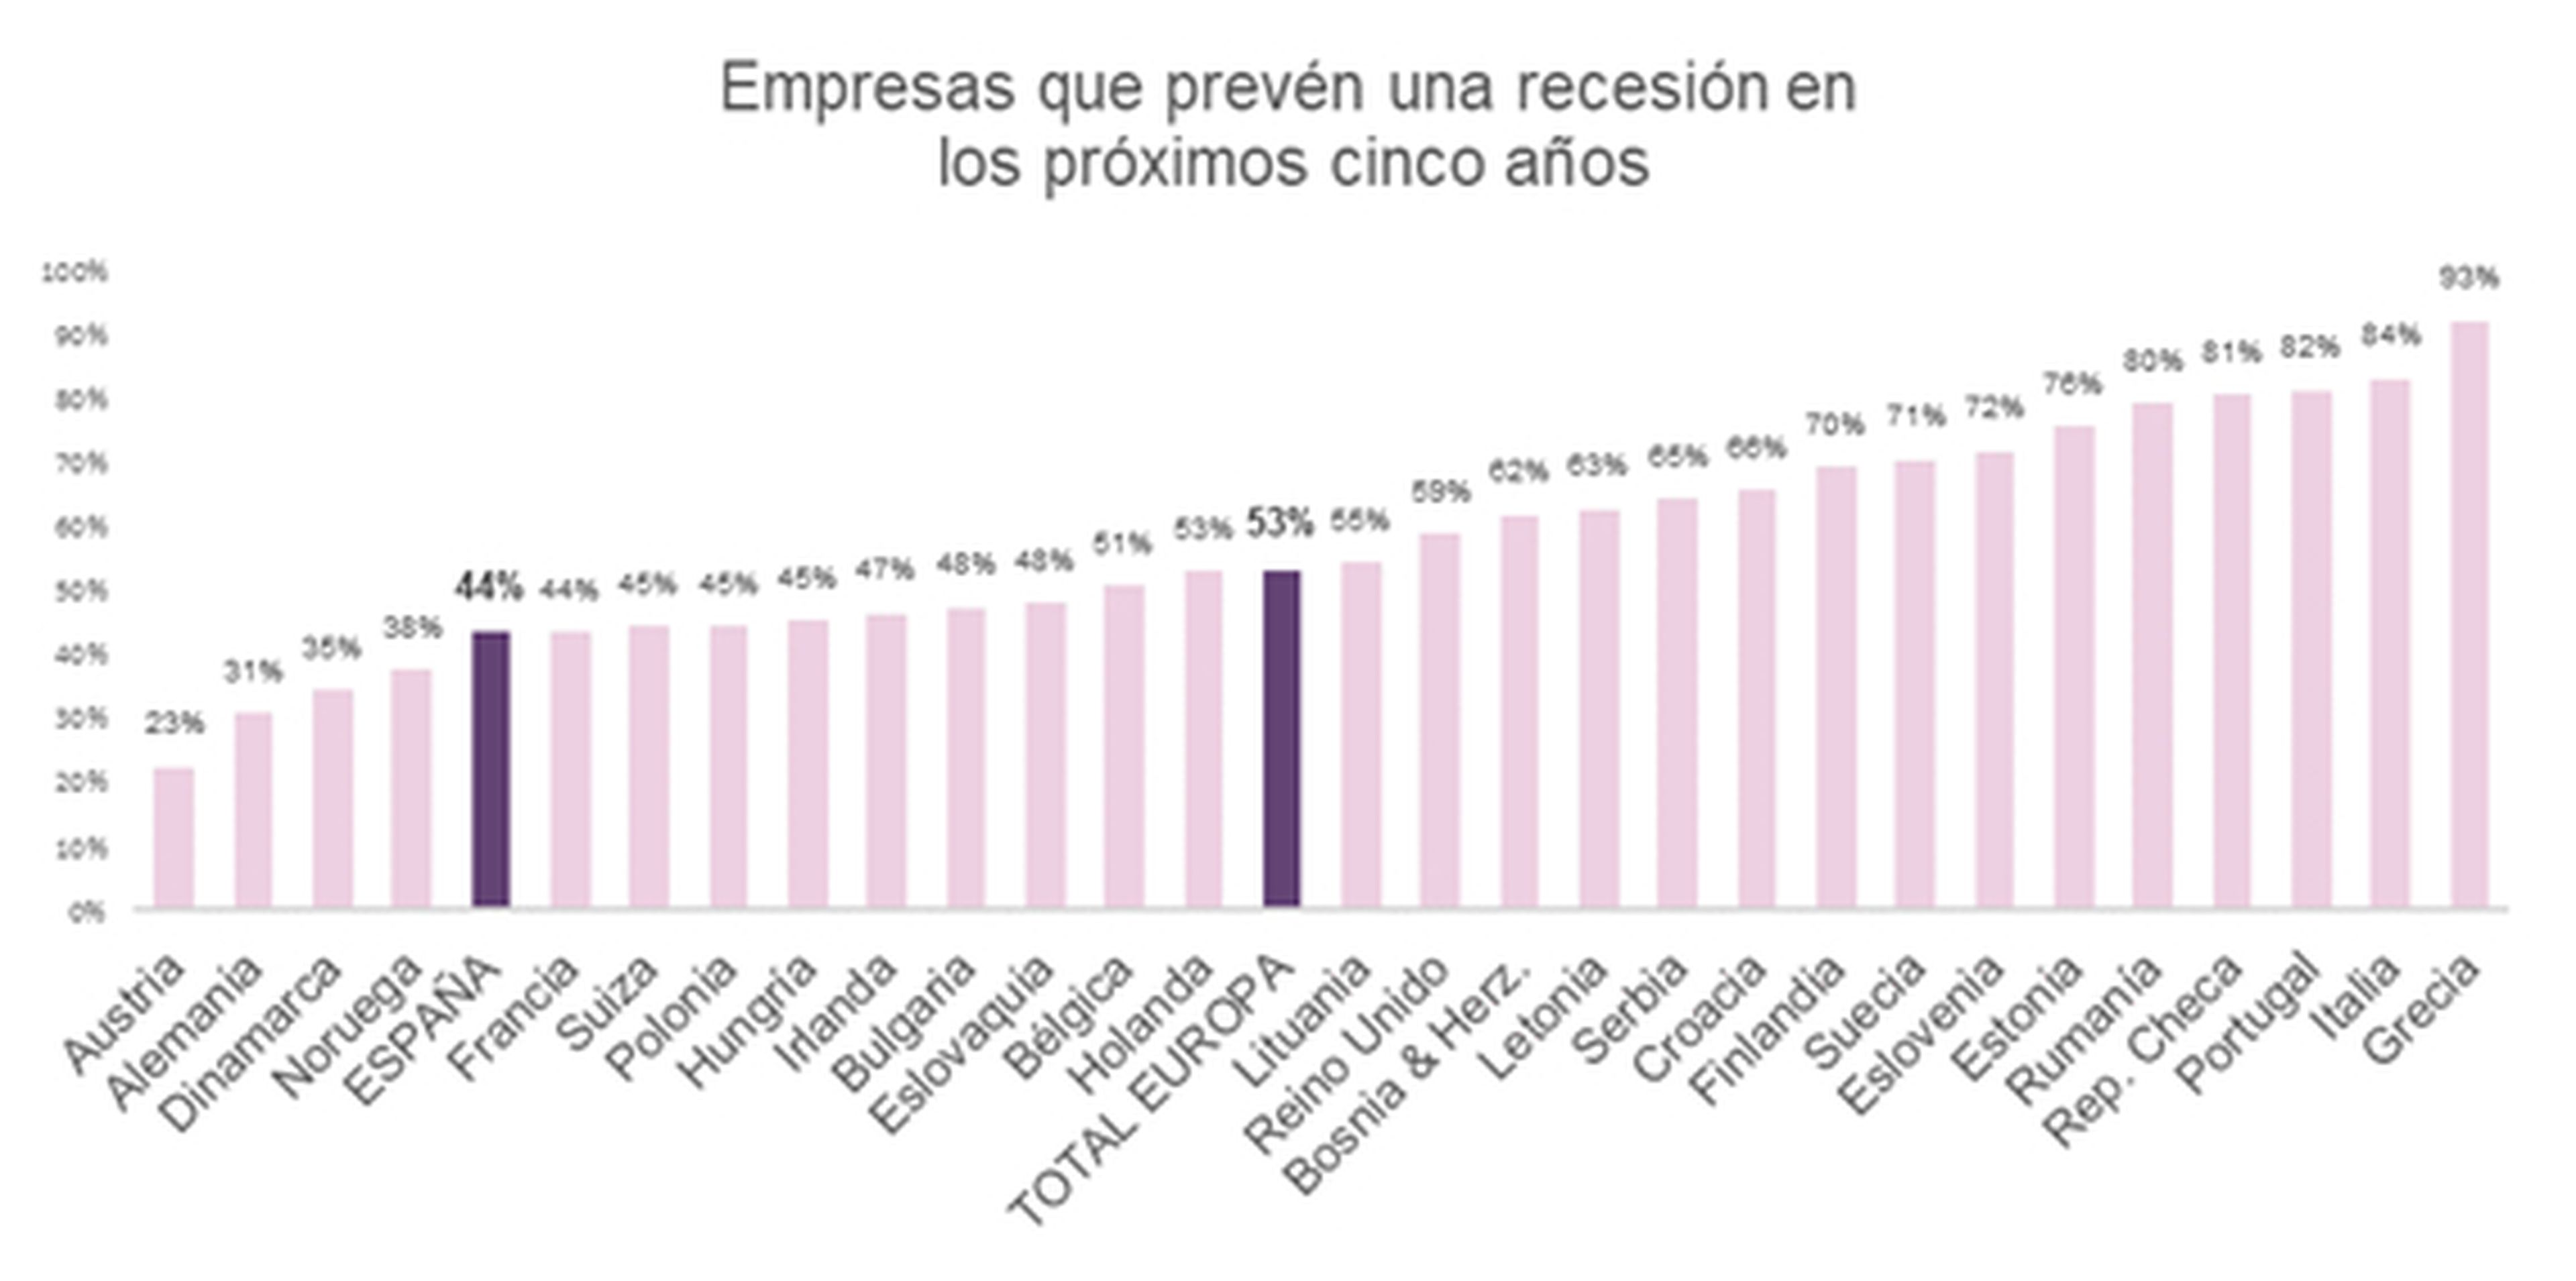 Países europeos en los que las empresas auguran una recesión